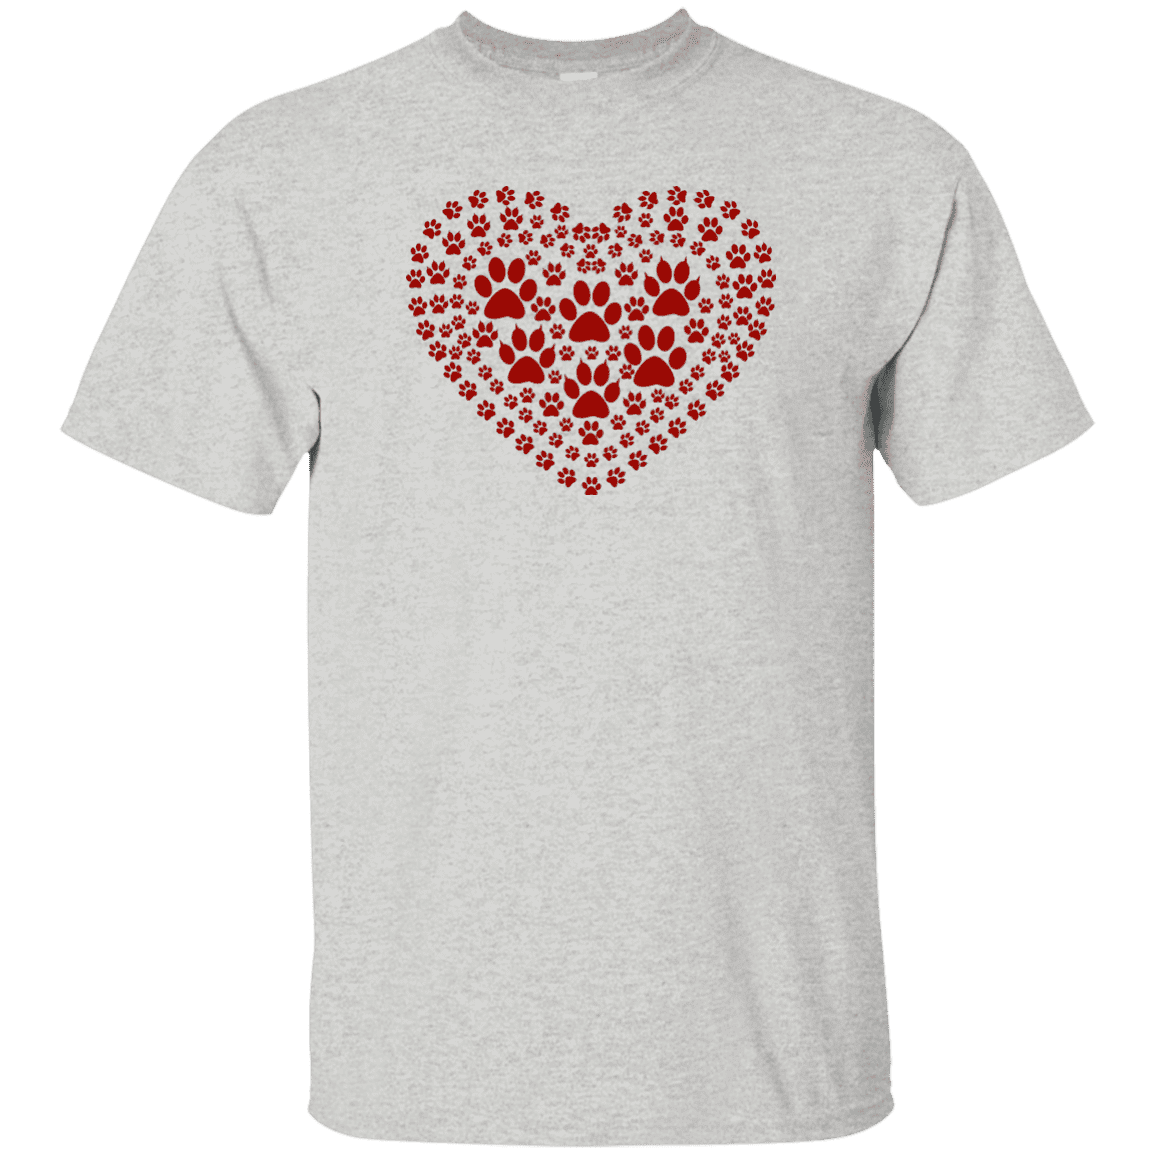 Pawprint Heart - T Shirt.